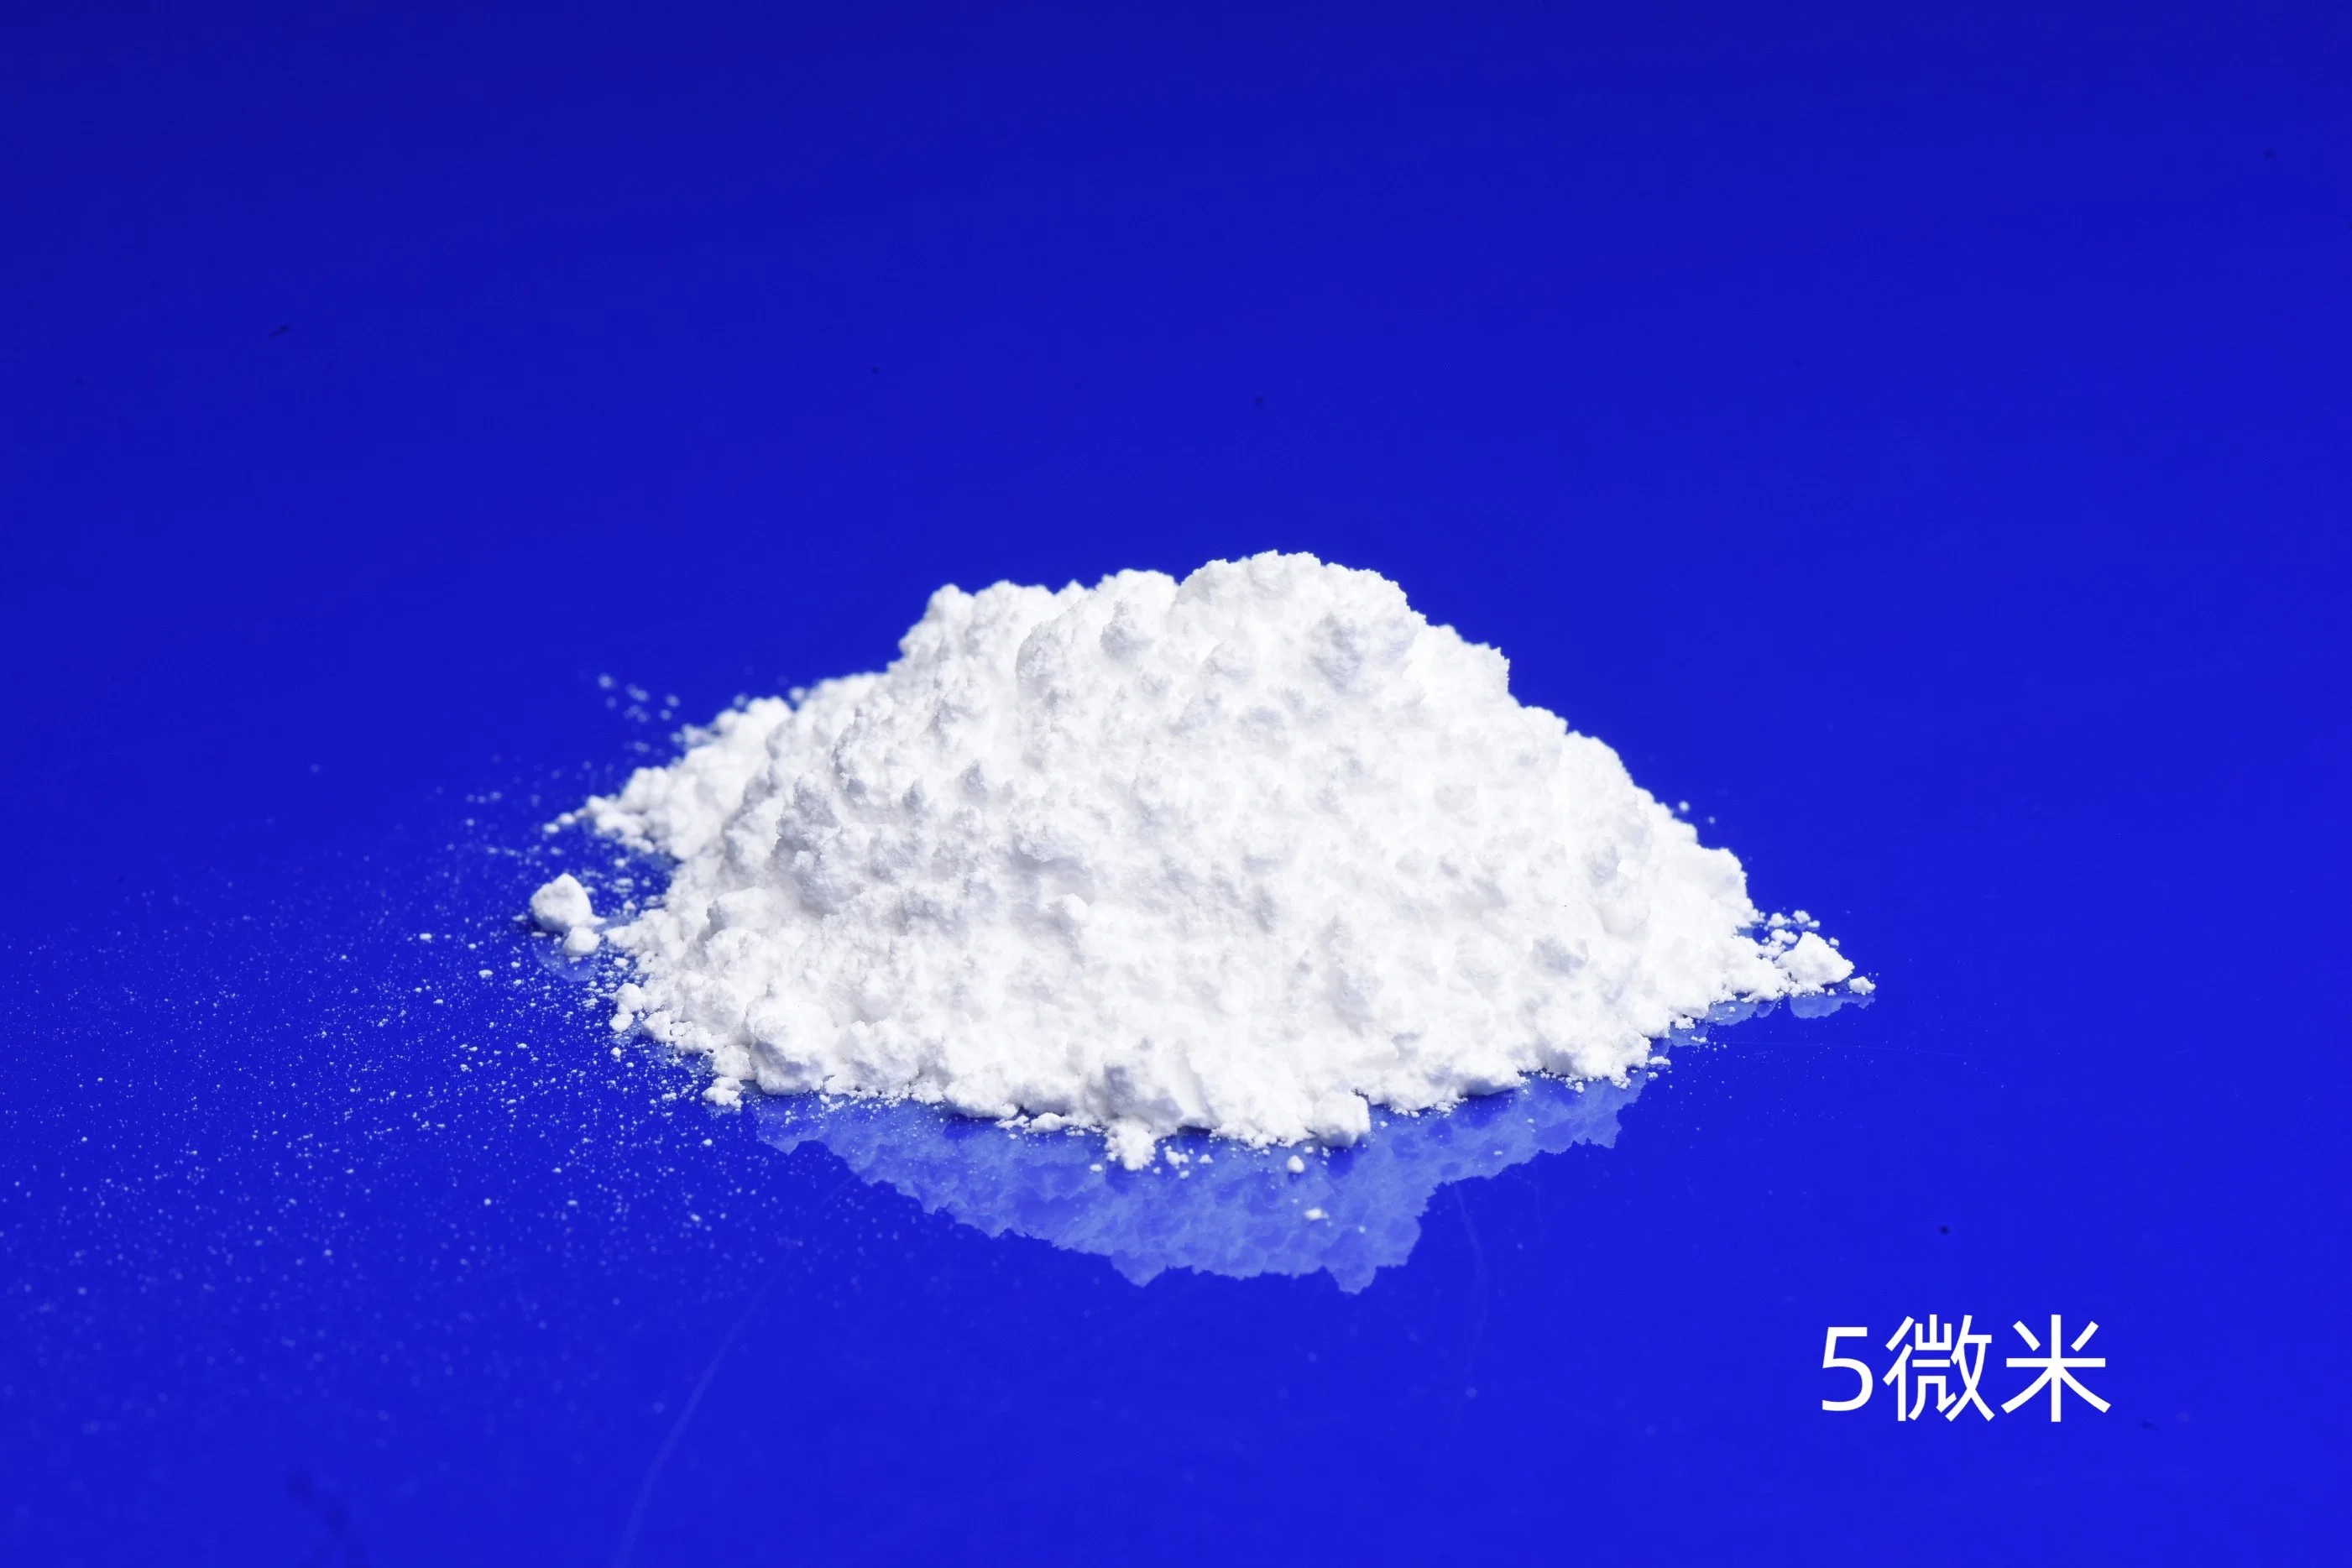 مسحوق ميكرون سيO2 99.9% 5% من مسحوق السيليكا المندمج لمنتجات الخزف المتقدمة